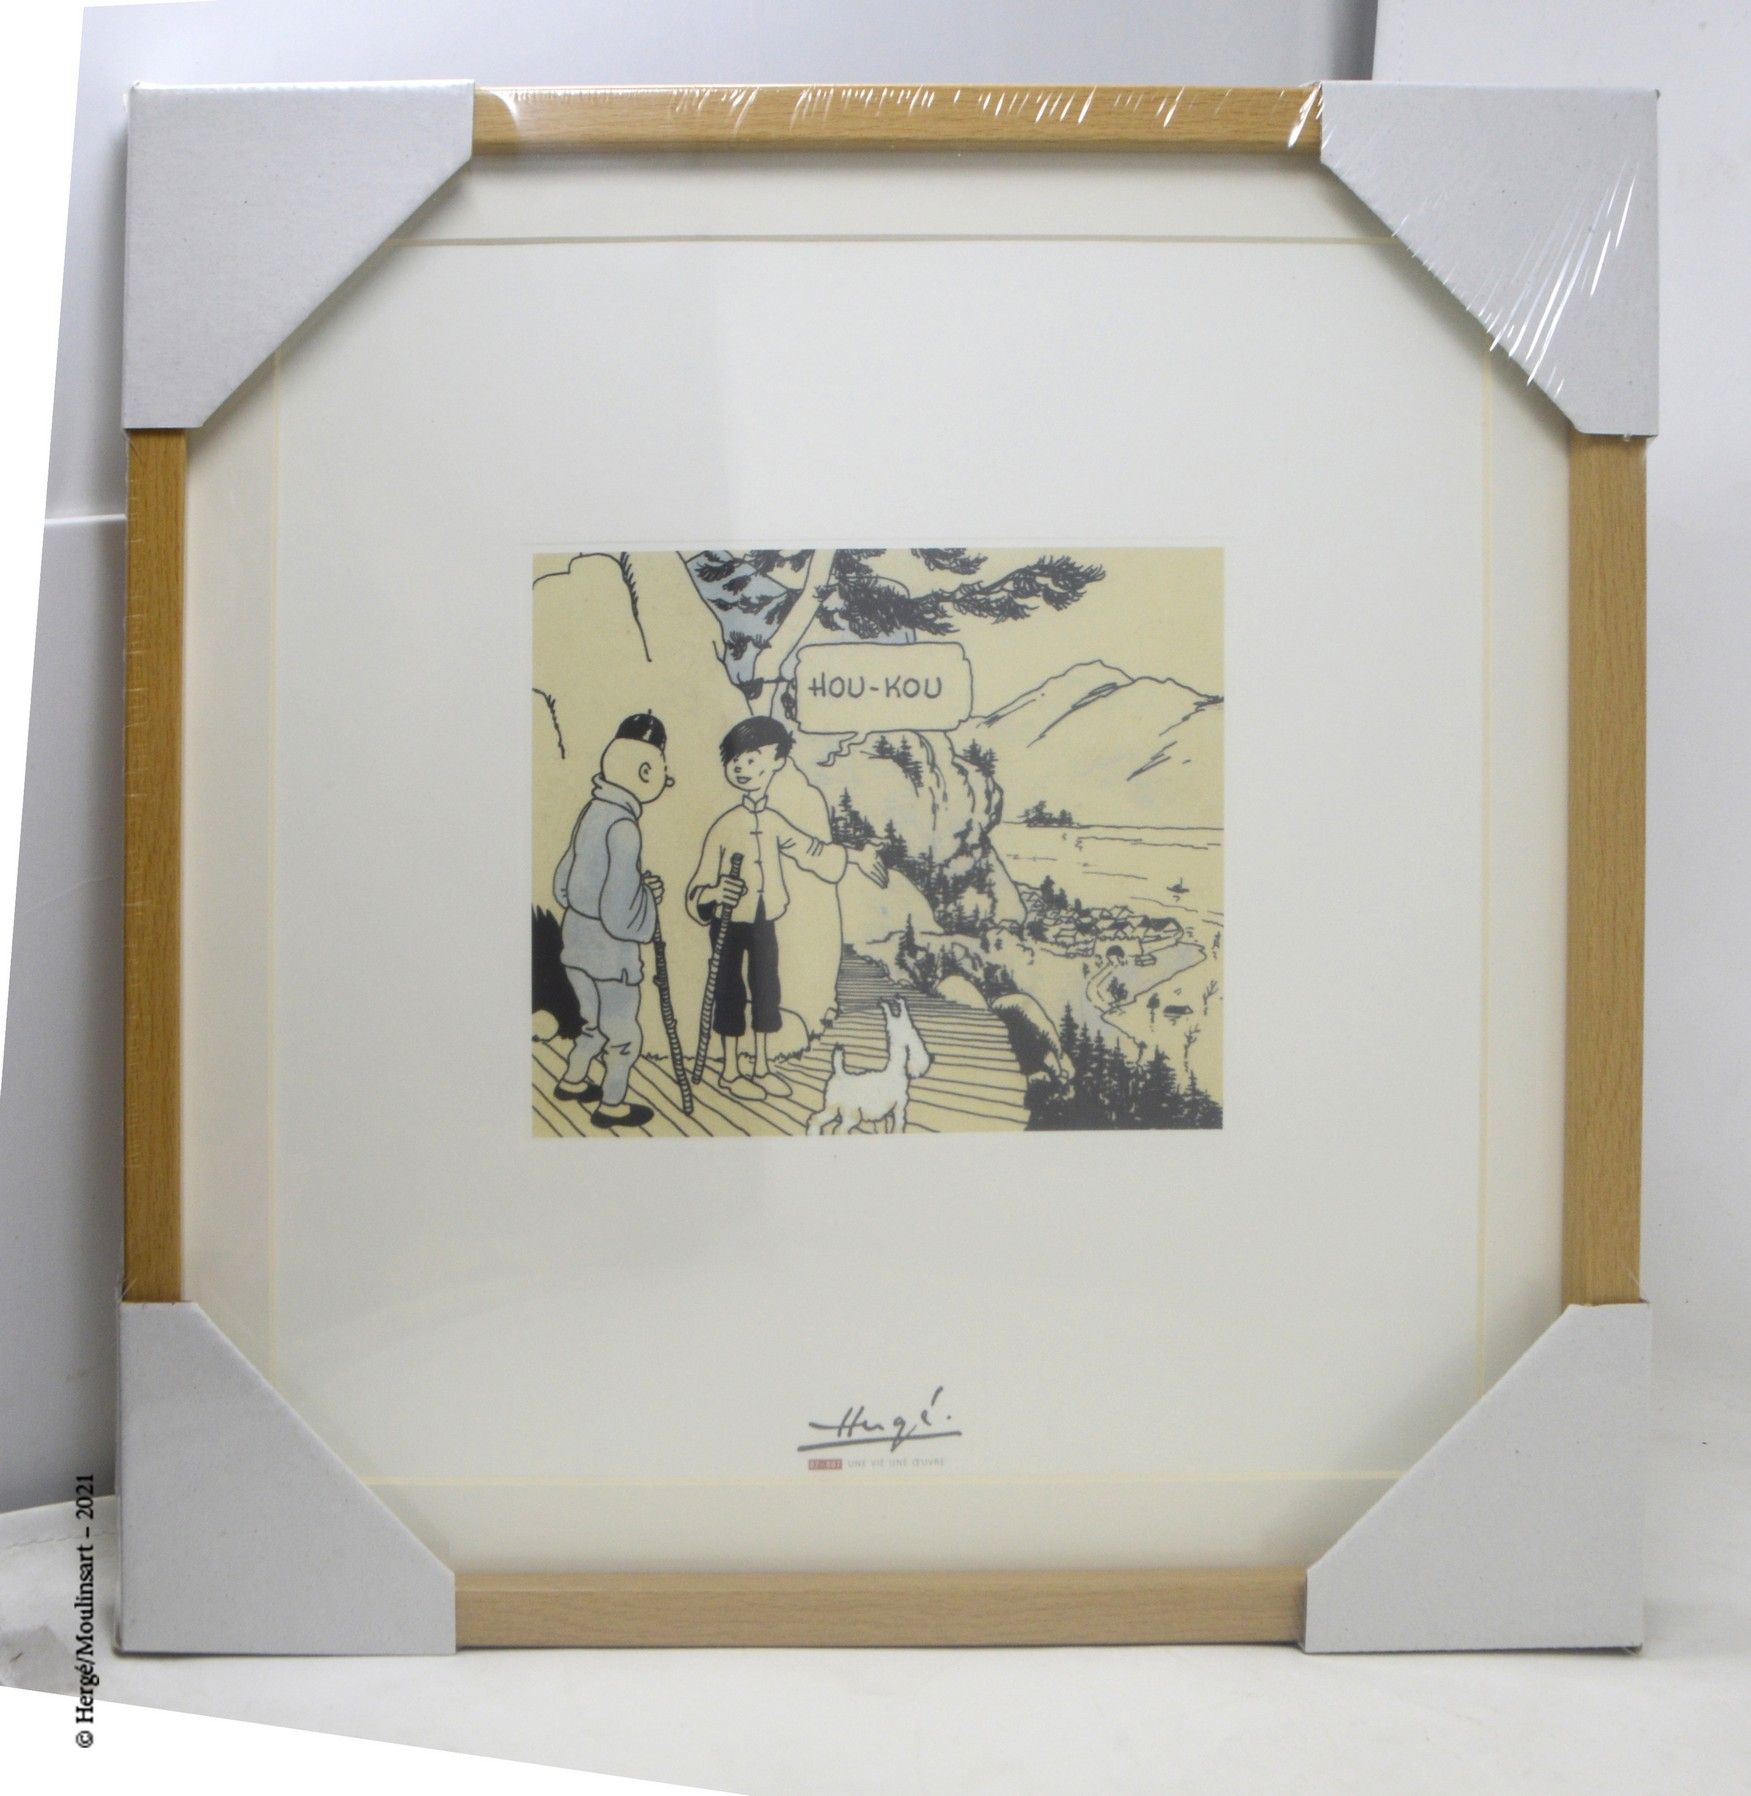 LE LOTUS BLEU HERGÉ/MOULINSART

Litografia Moulinsart : Hergé, una vita, un'oper&hellip;